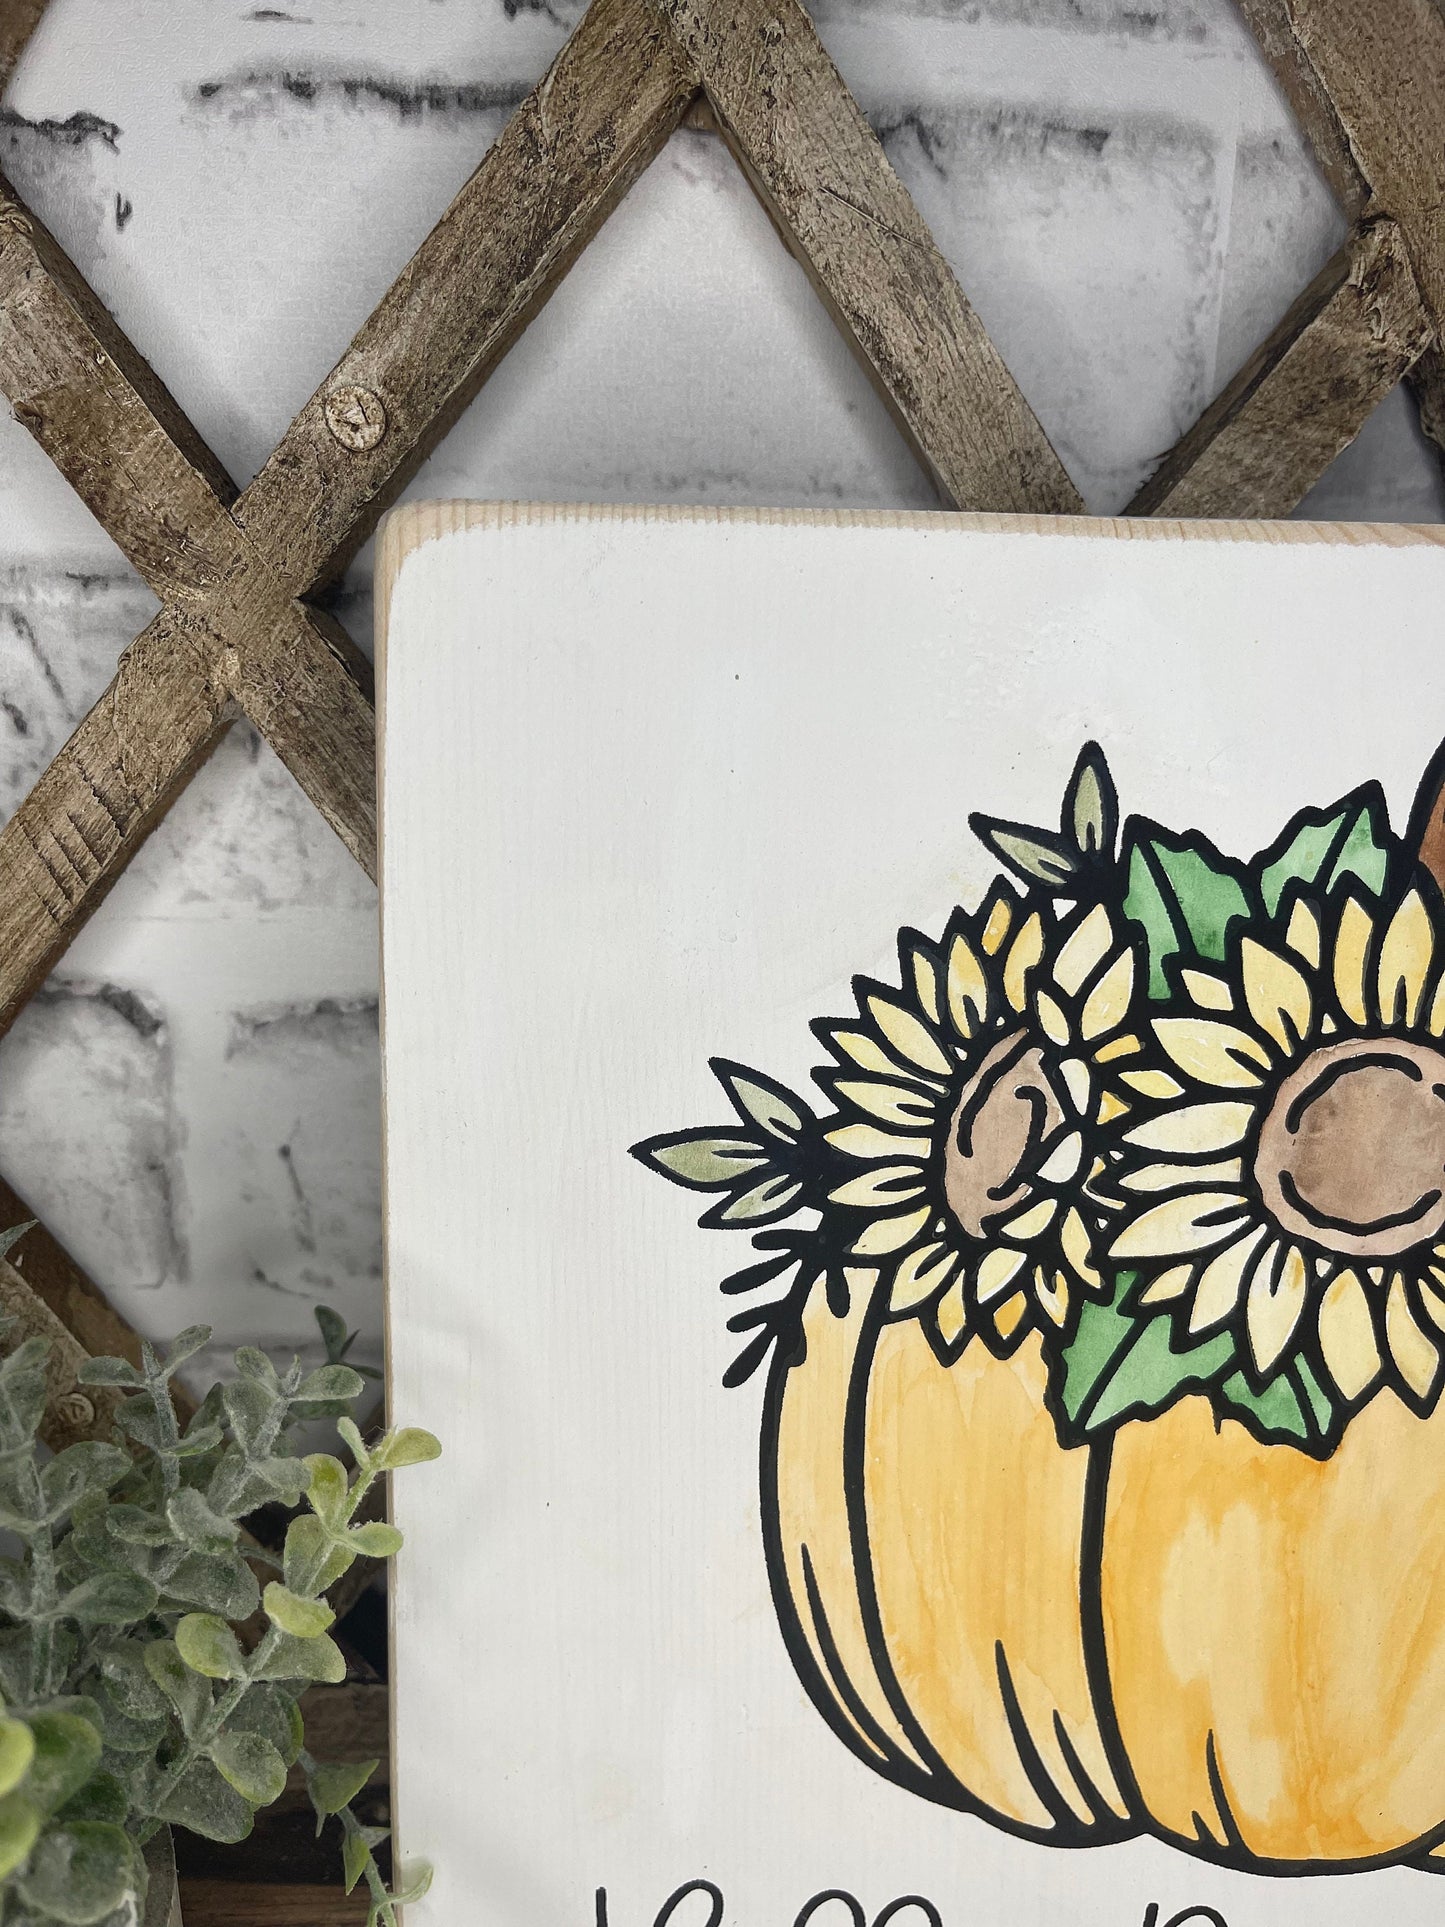 Flower Pumpkin Wood Sign - Hello Pumpkin - Sunflower Home Decor - Fall Shelf Sitter - Pumpkin Sunflower Wall Hanging